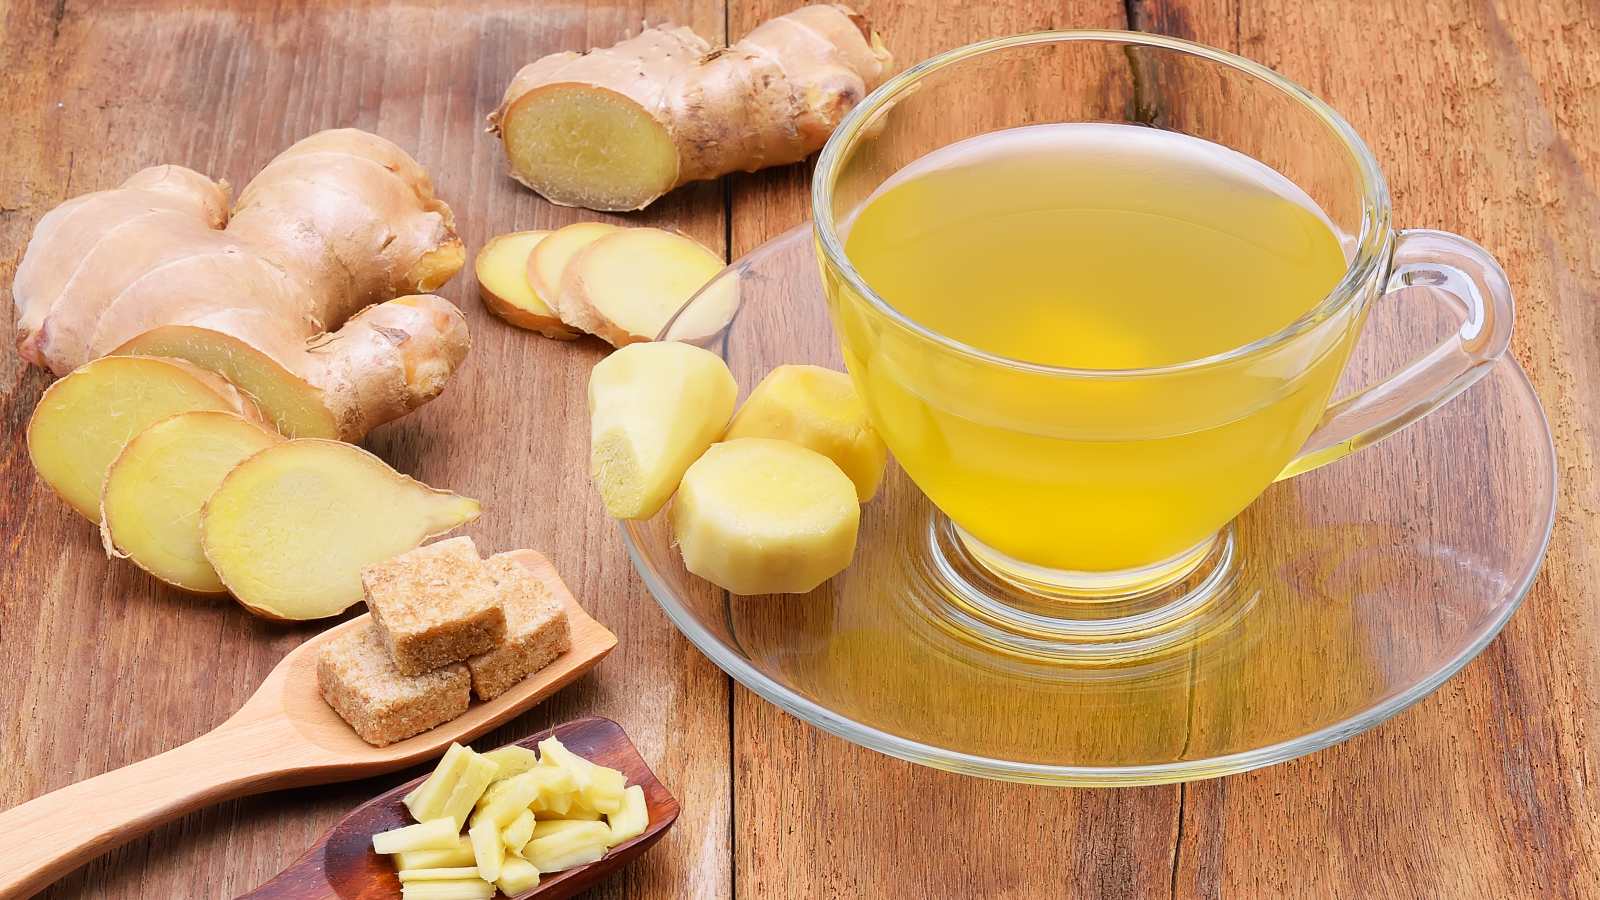 Know how to make ginger water for weight loss.- जानिए वेट लॉस और फिटनेस के  लिए कैसे बनाना है अदरक का पानी। | HealthShots Hindi